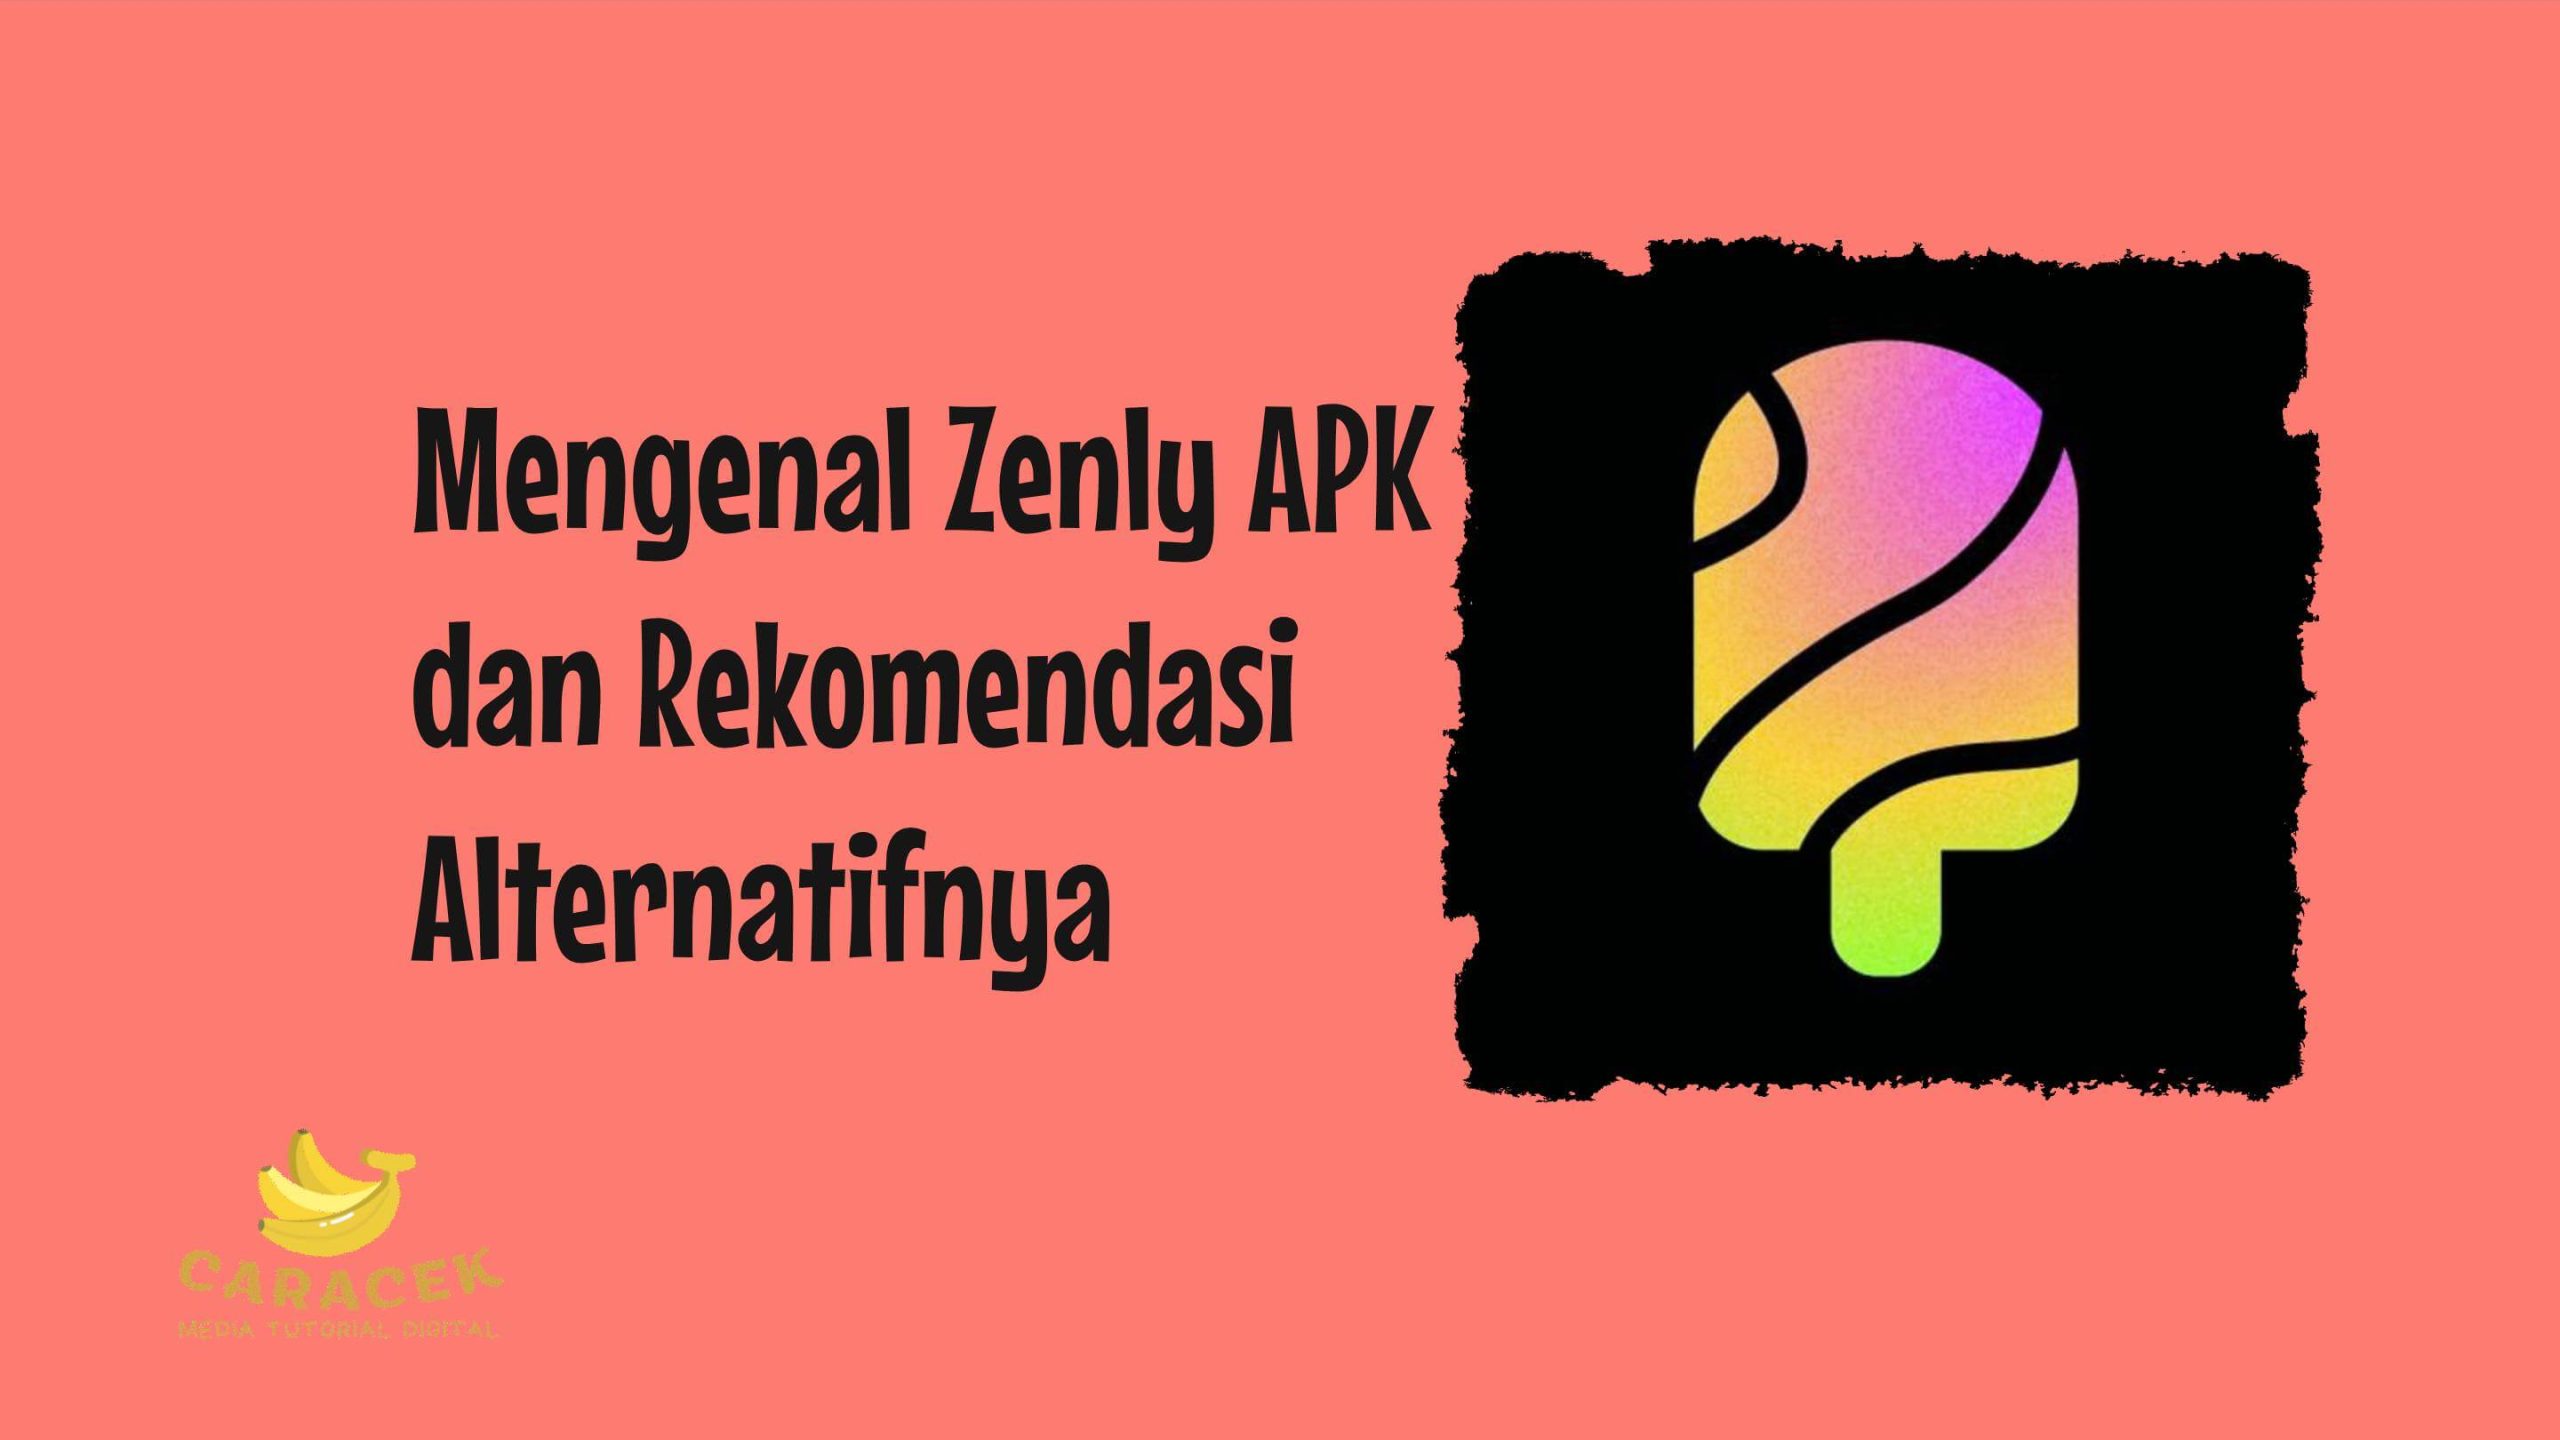 Zenly APK